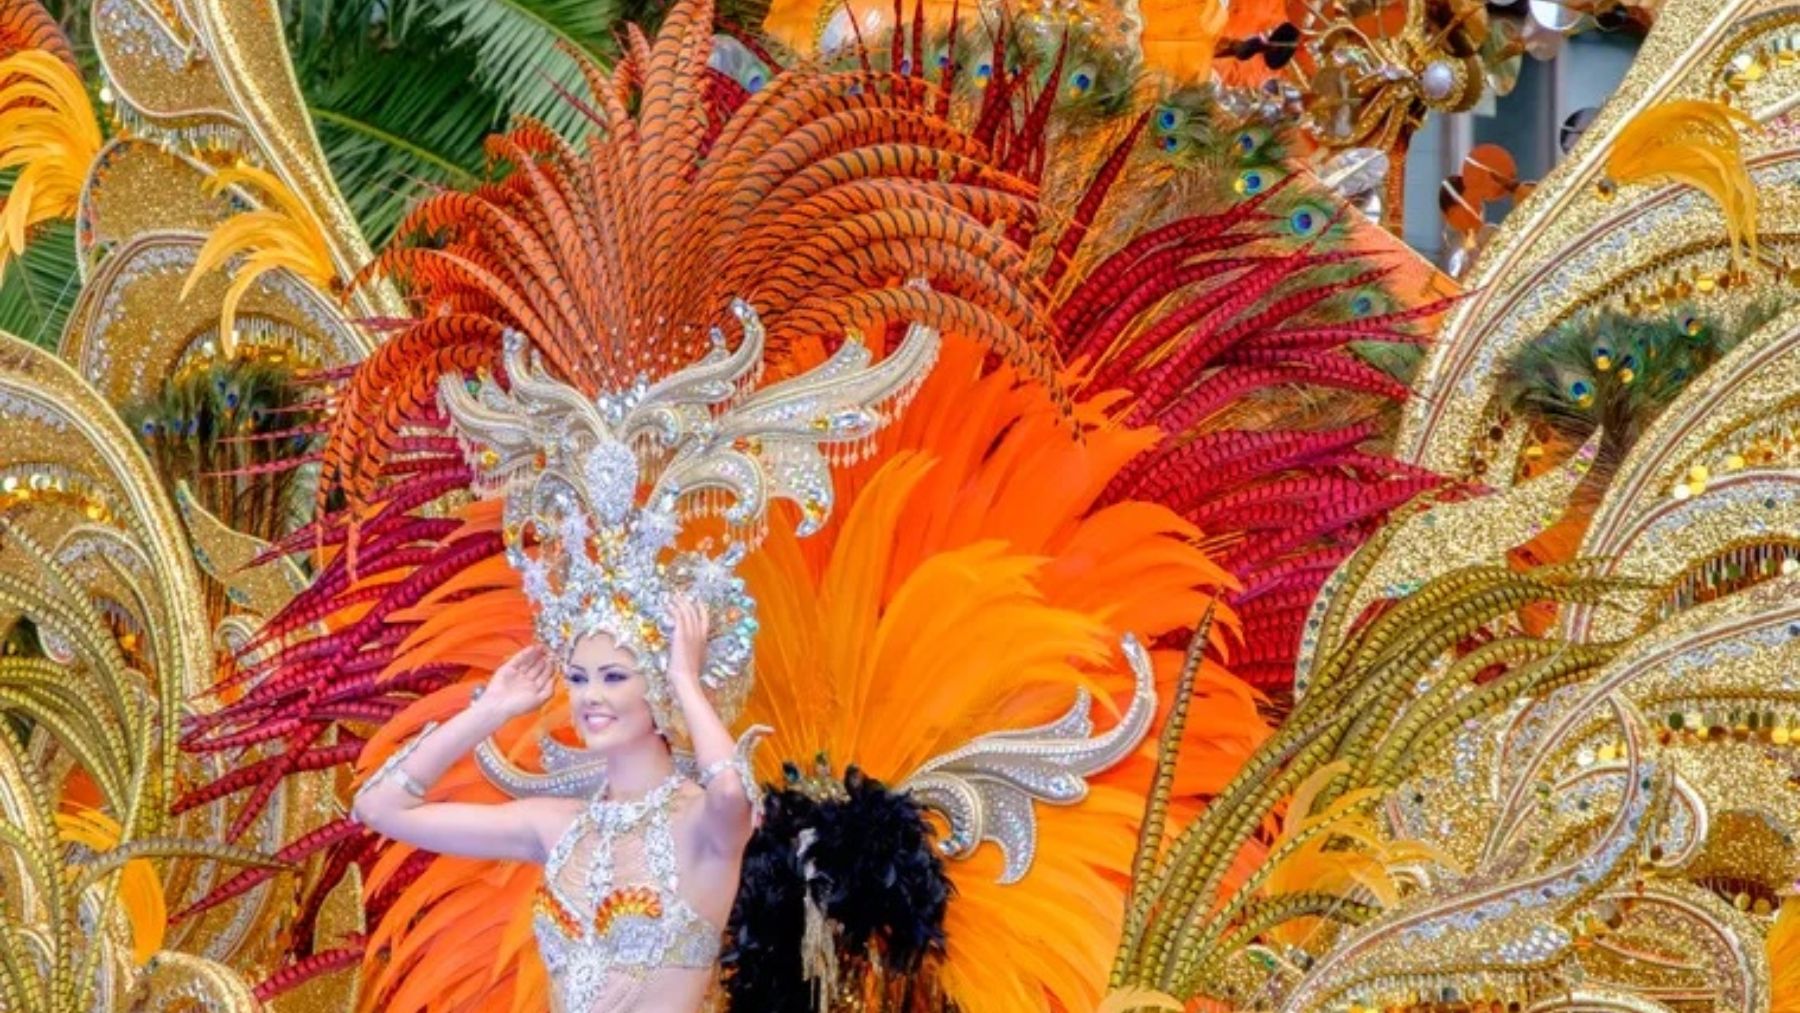 Carnaval Las Palmas de Gran Canaria 2019: Programa, más